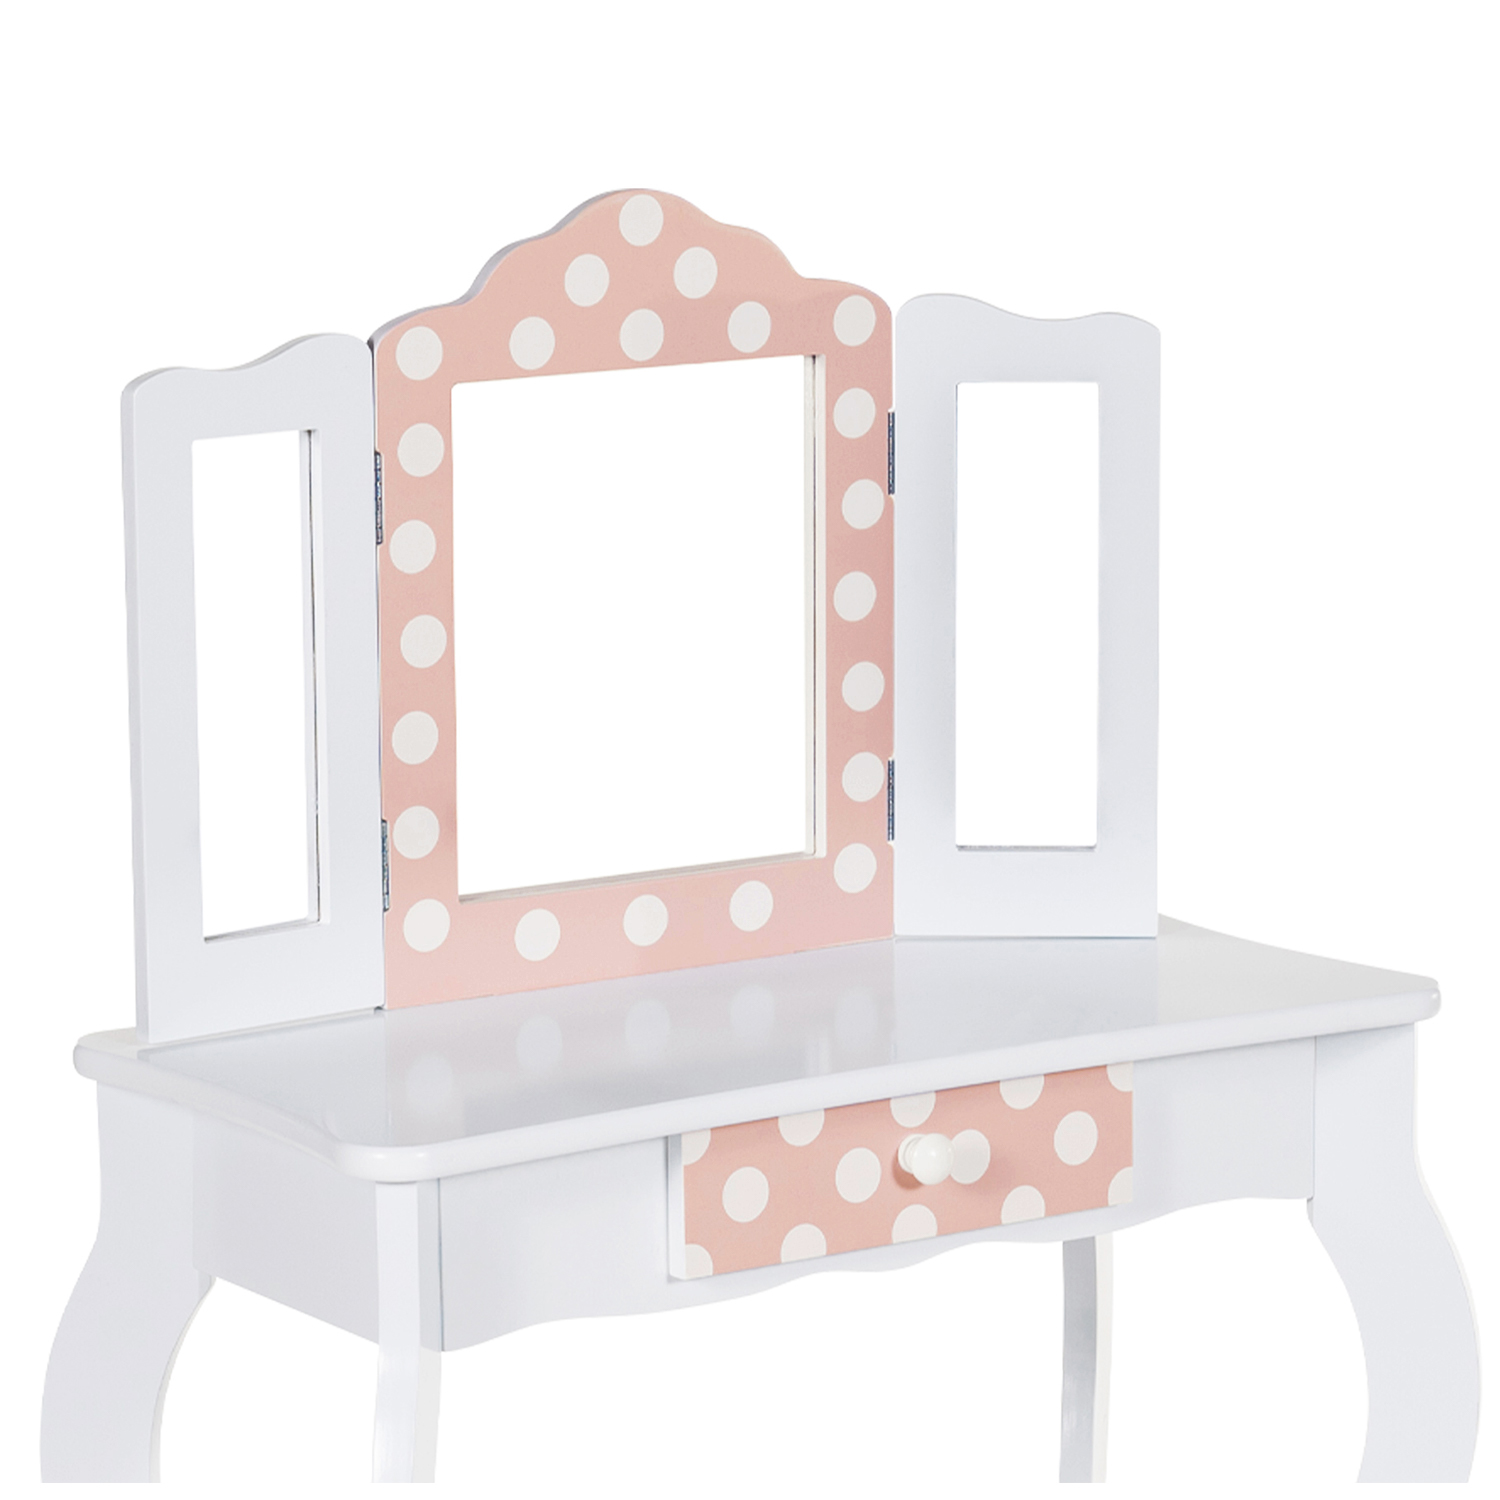 Coiffeuse enfant rose bois avec chaise ✔️ Petite Amélie